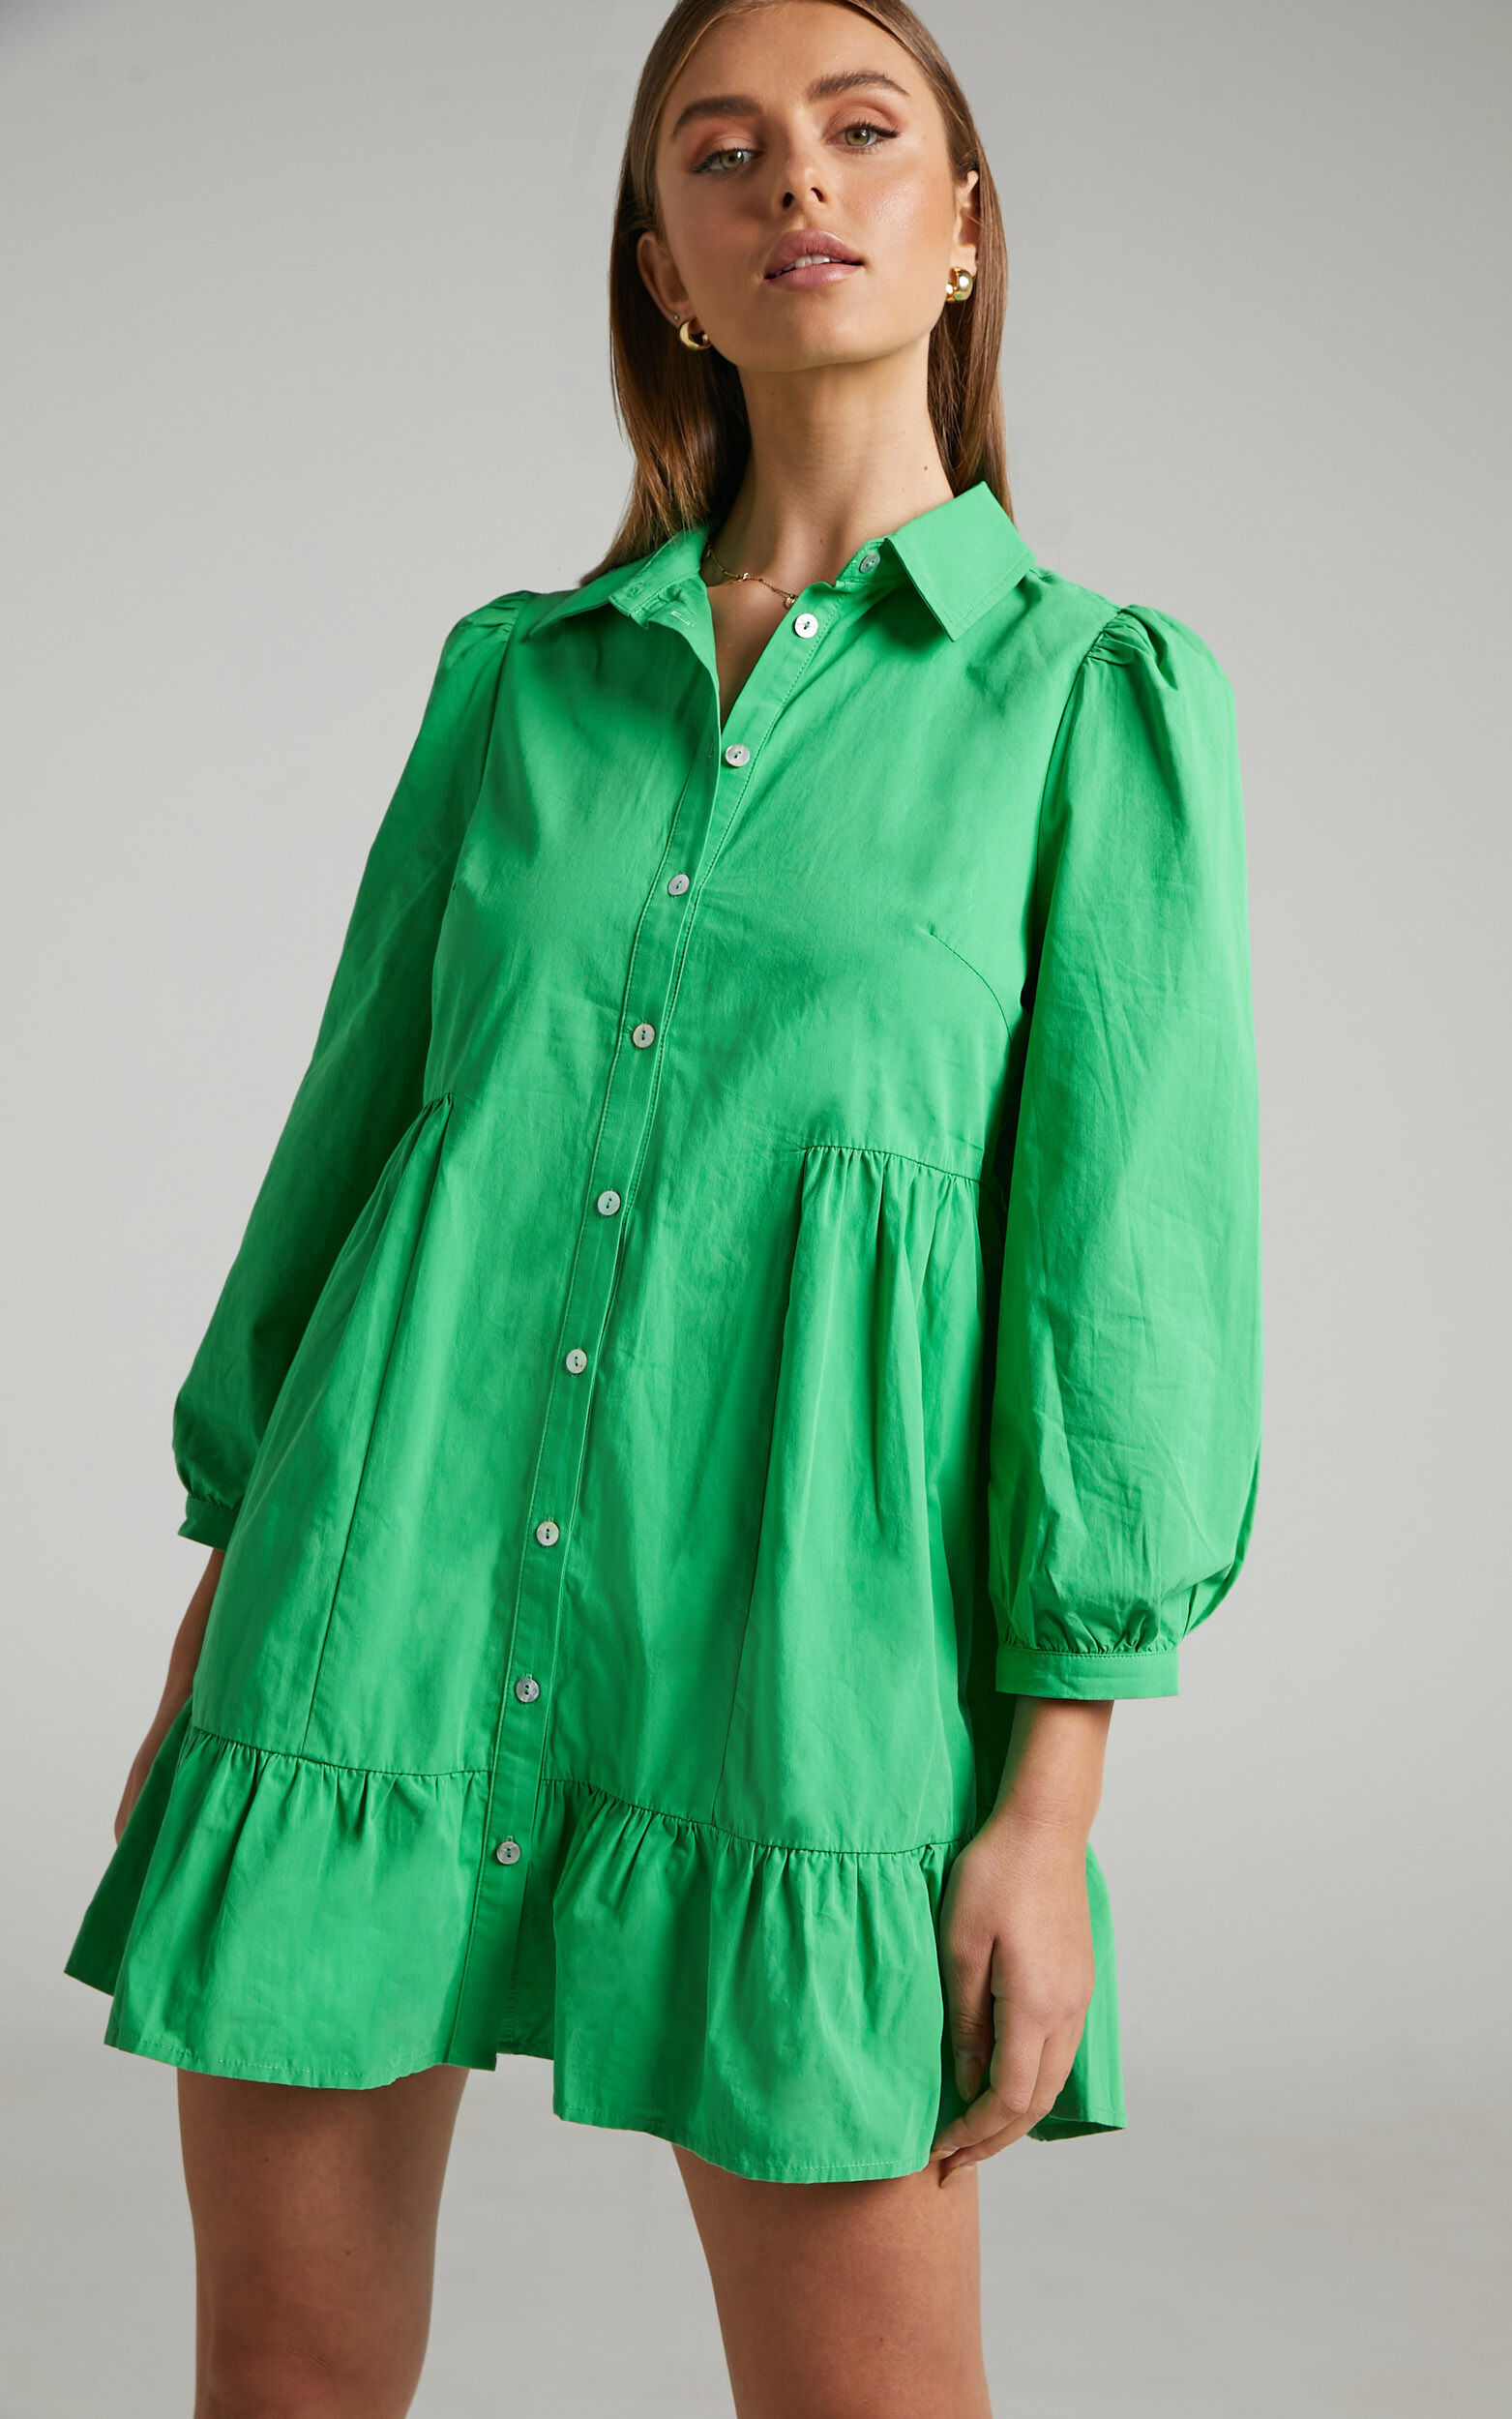 Maulee Mini Dress - Frill Hem Shirt Dress in Green - 04, GRN1